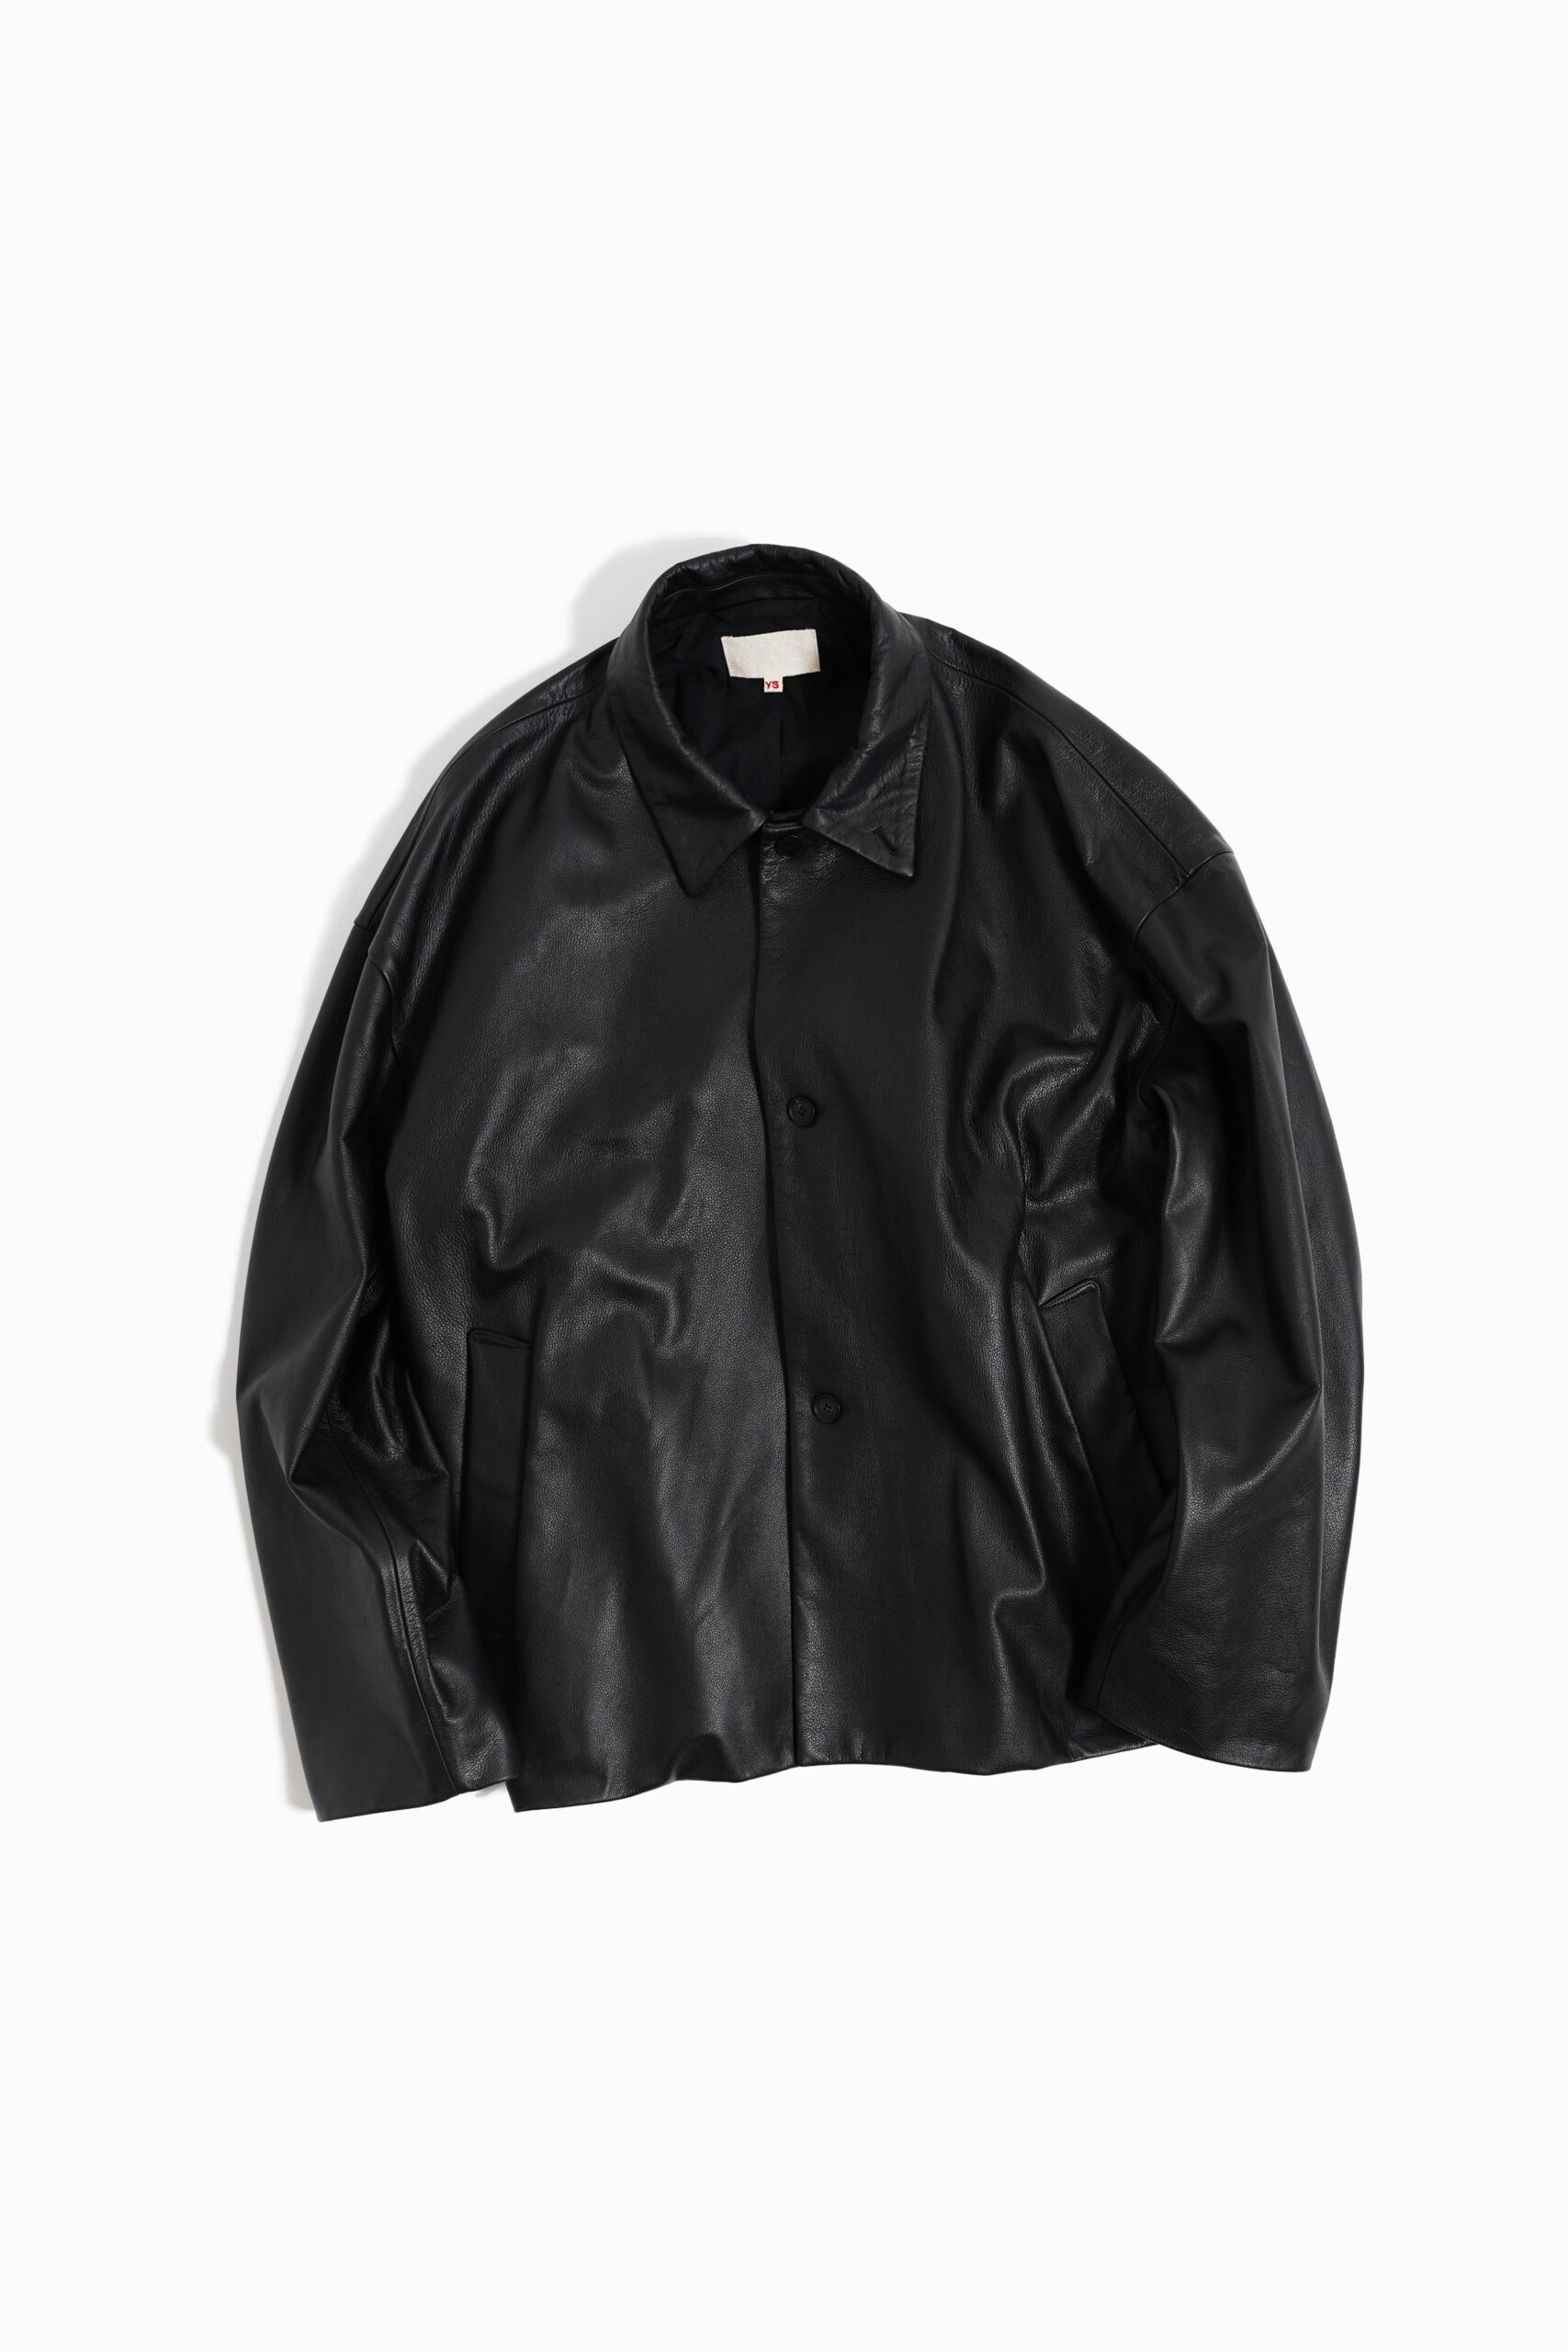 パネル yoko sakamoto leather work jacket | agnesallnaturalgrill.com